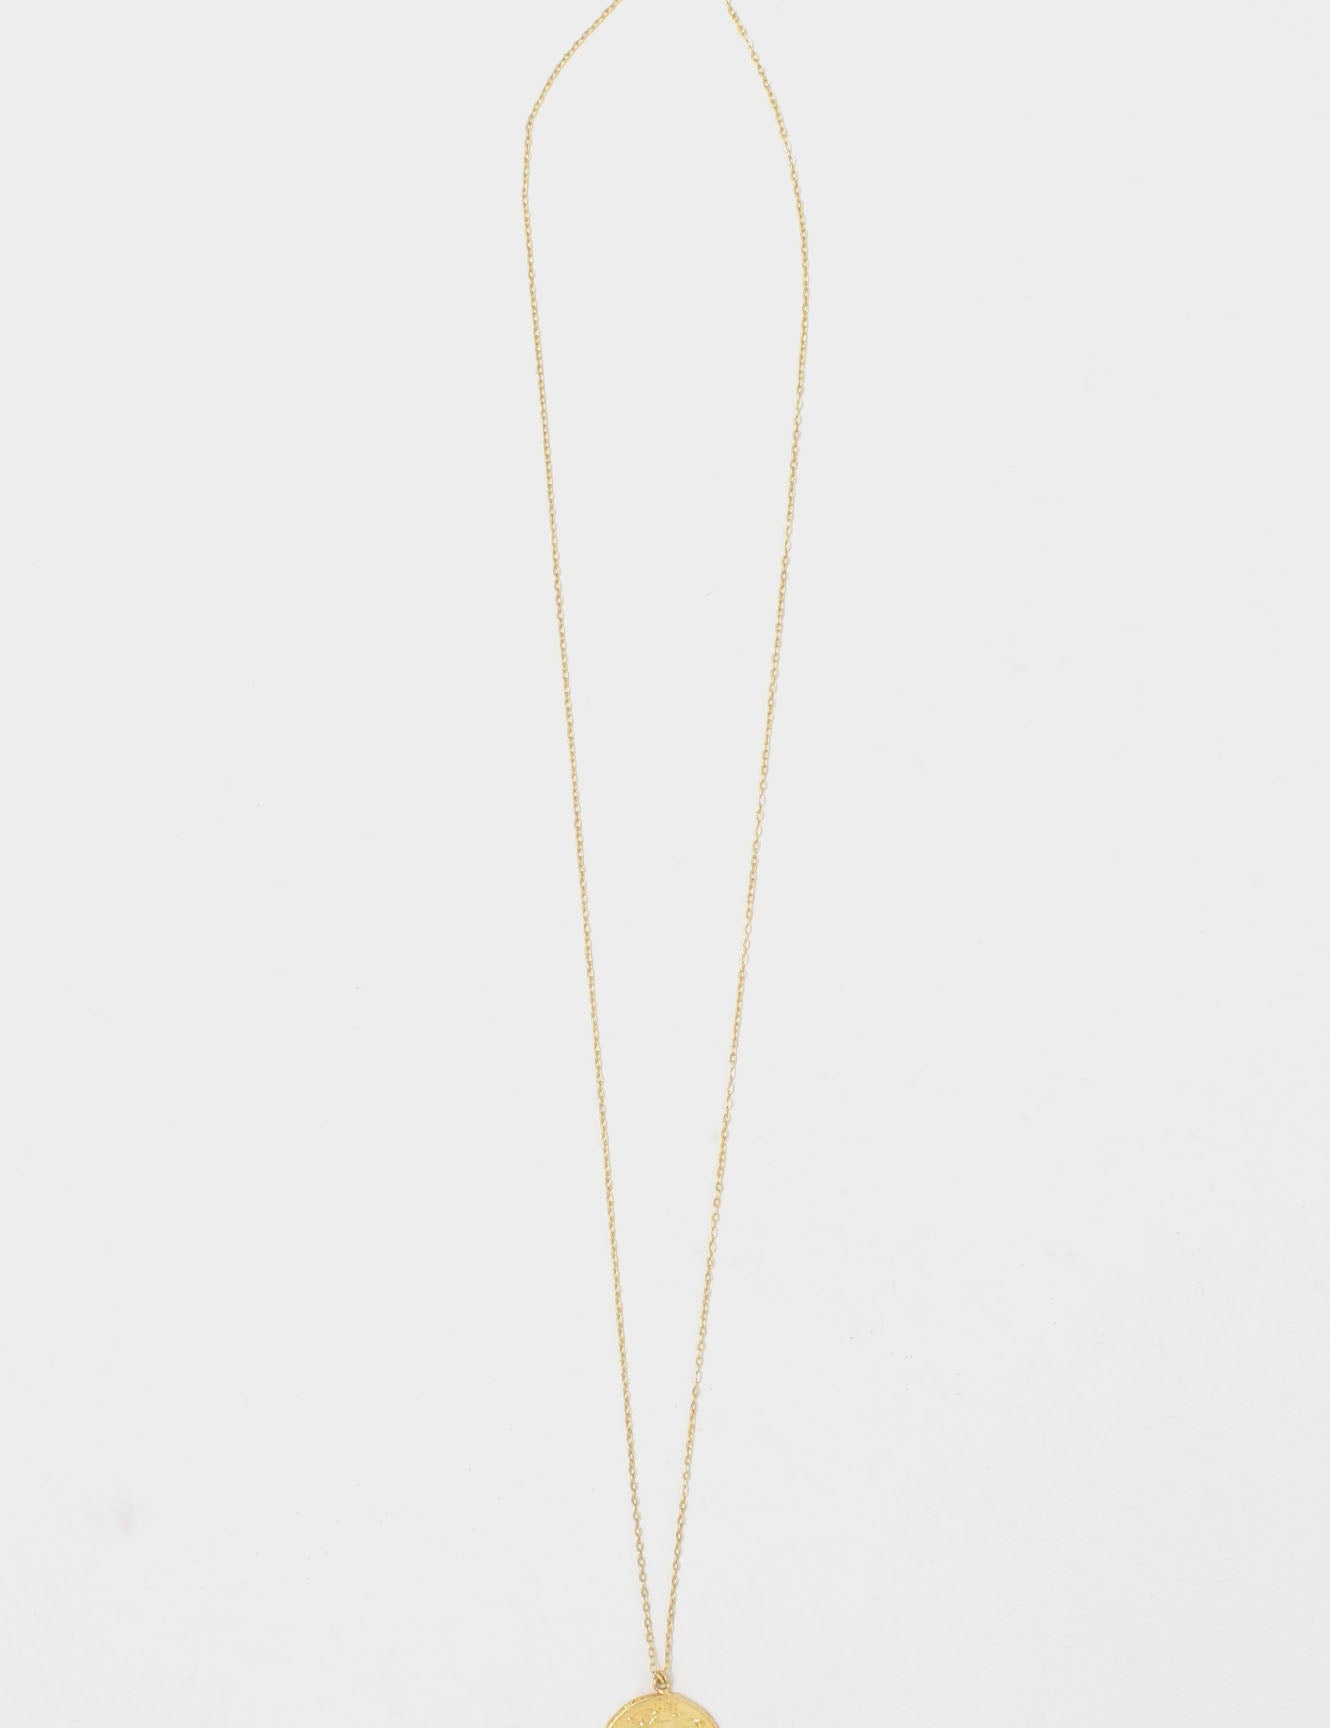 greek-long-necklace-2_a62c6536-21af-4458-a162-855c941c3af7.jpg